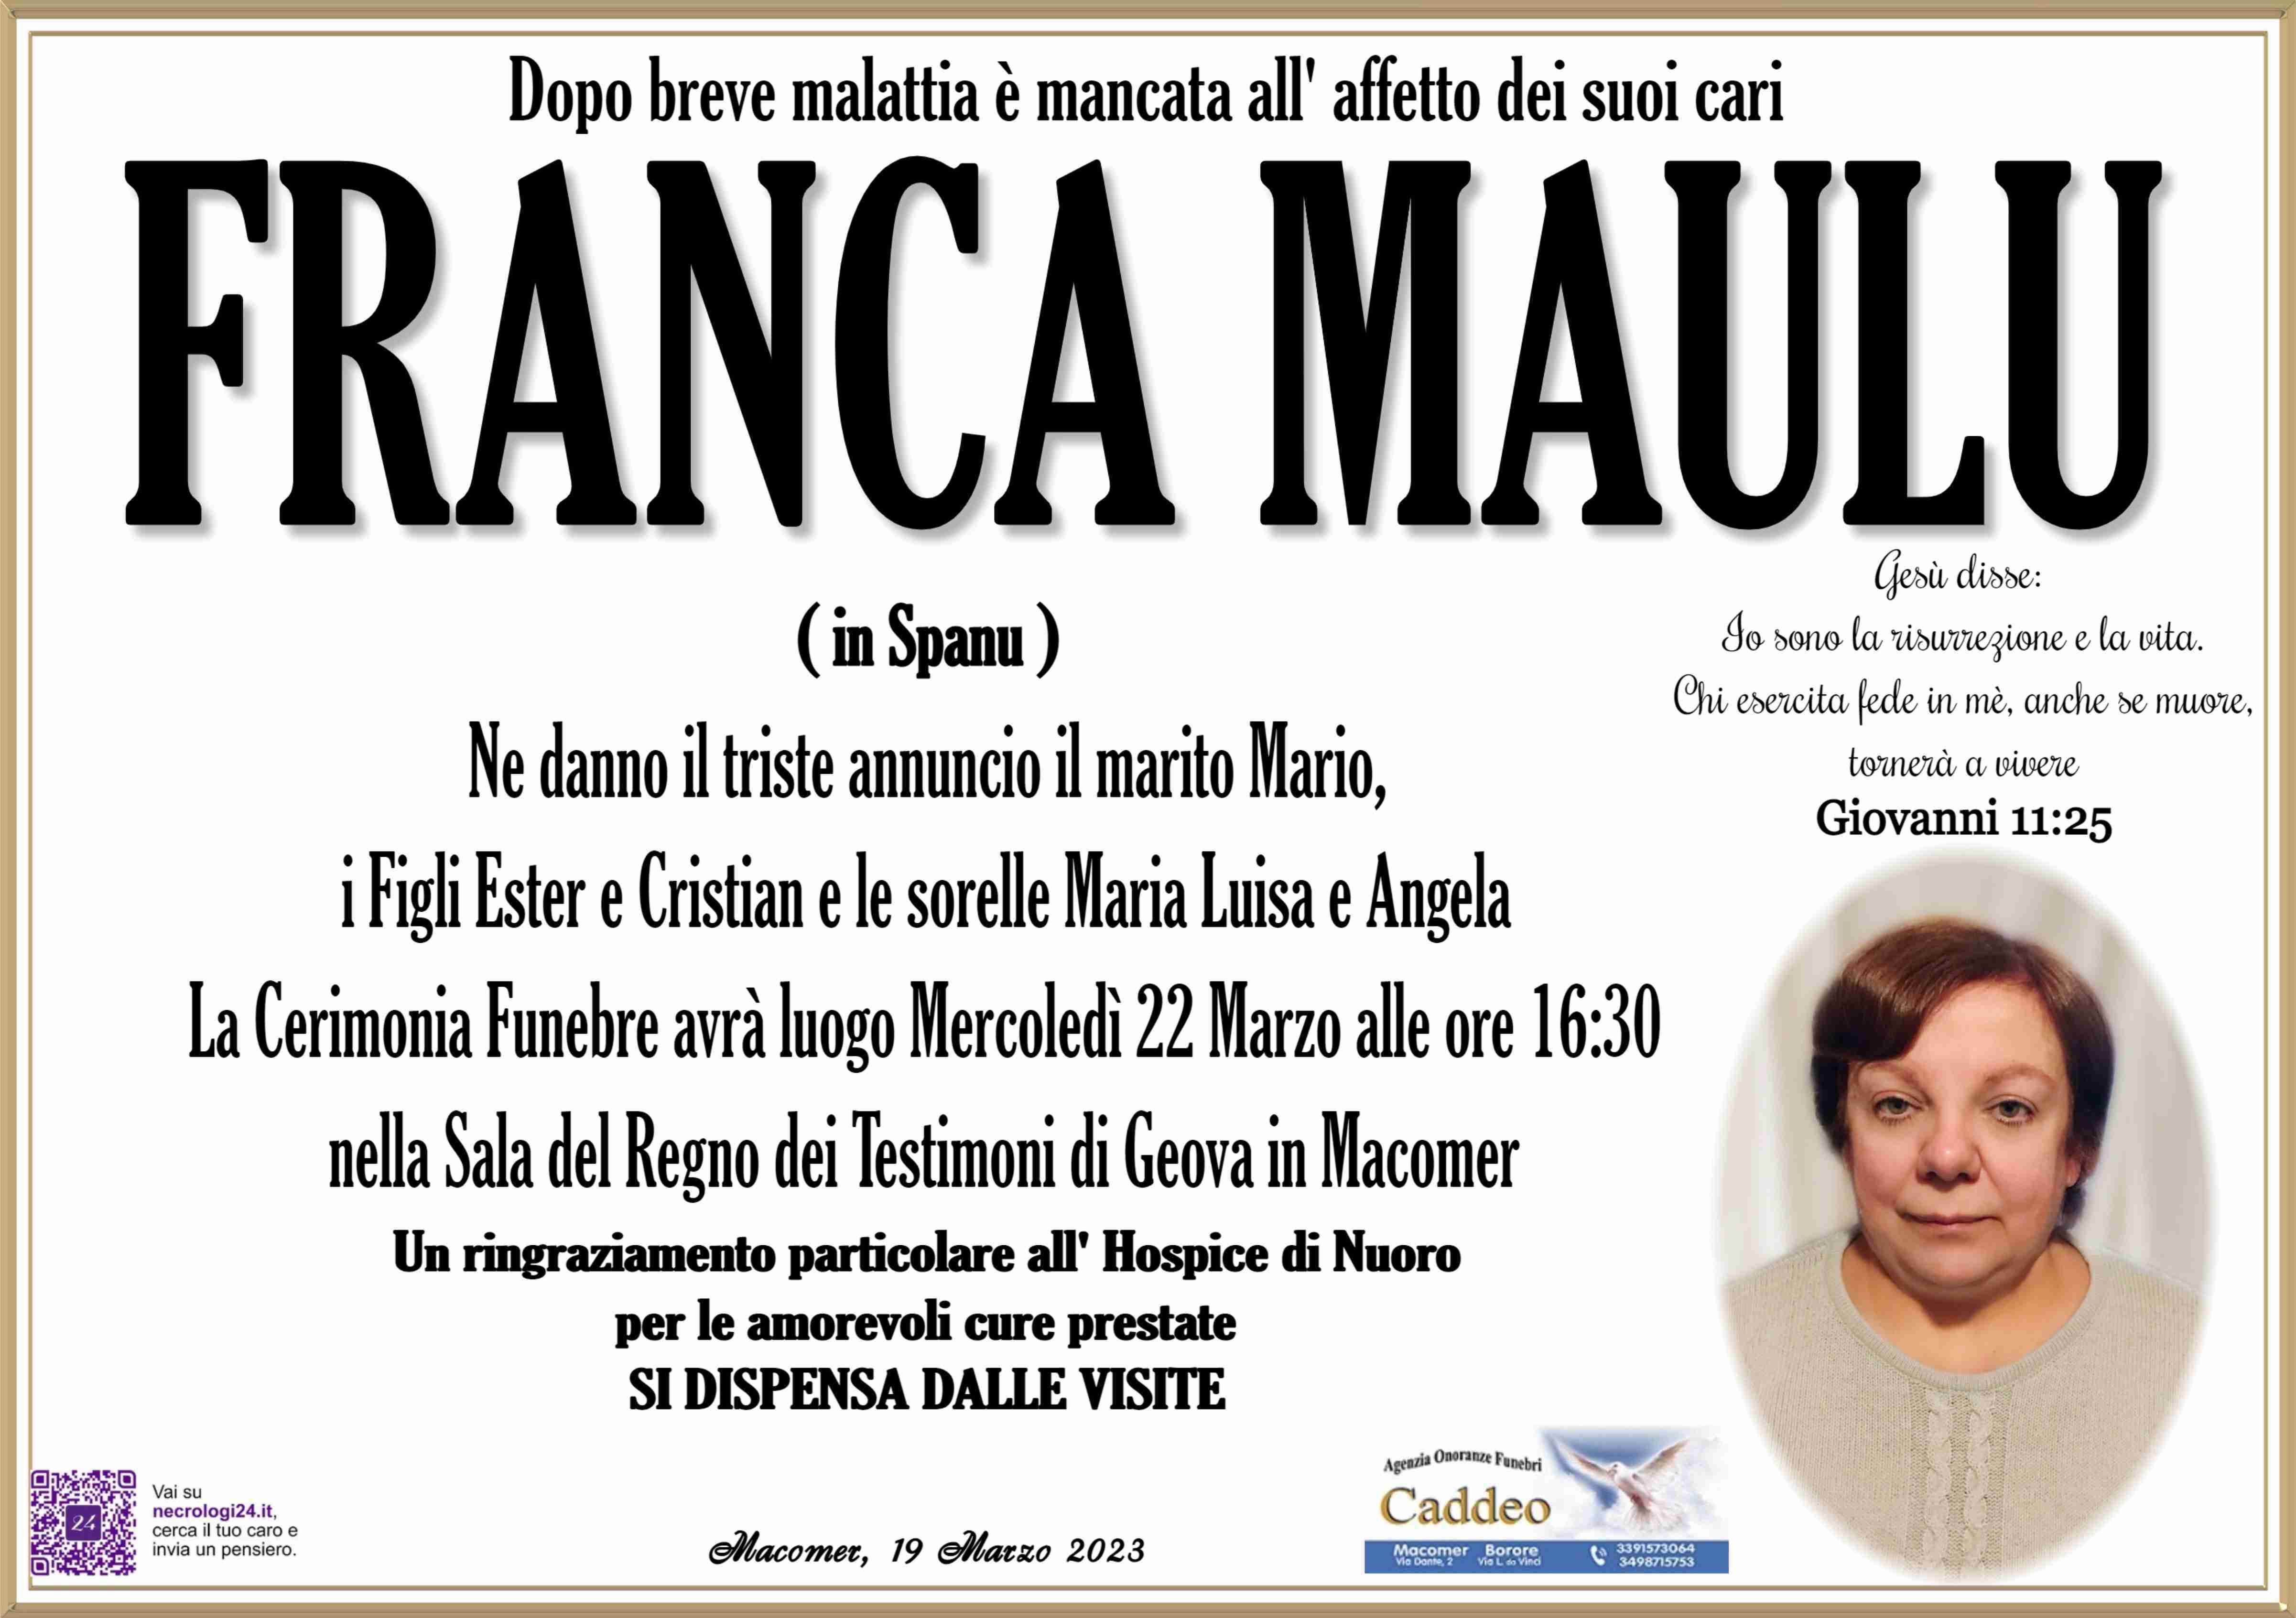 Franca Maulu